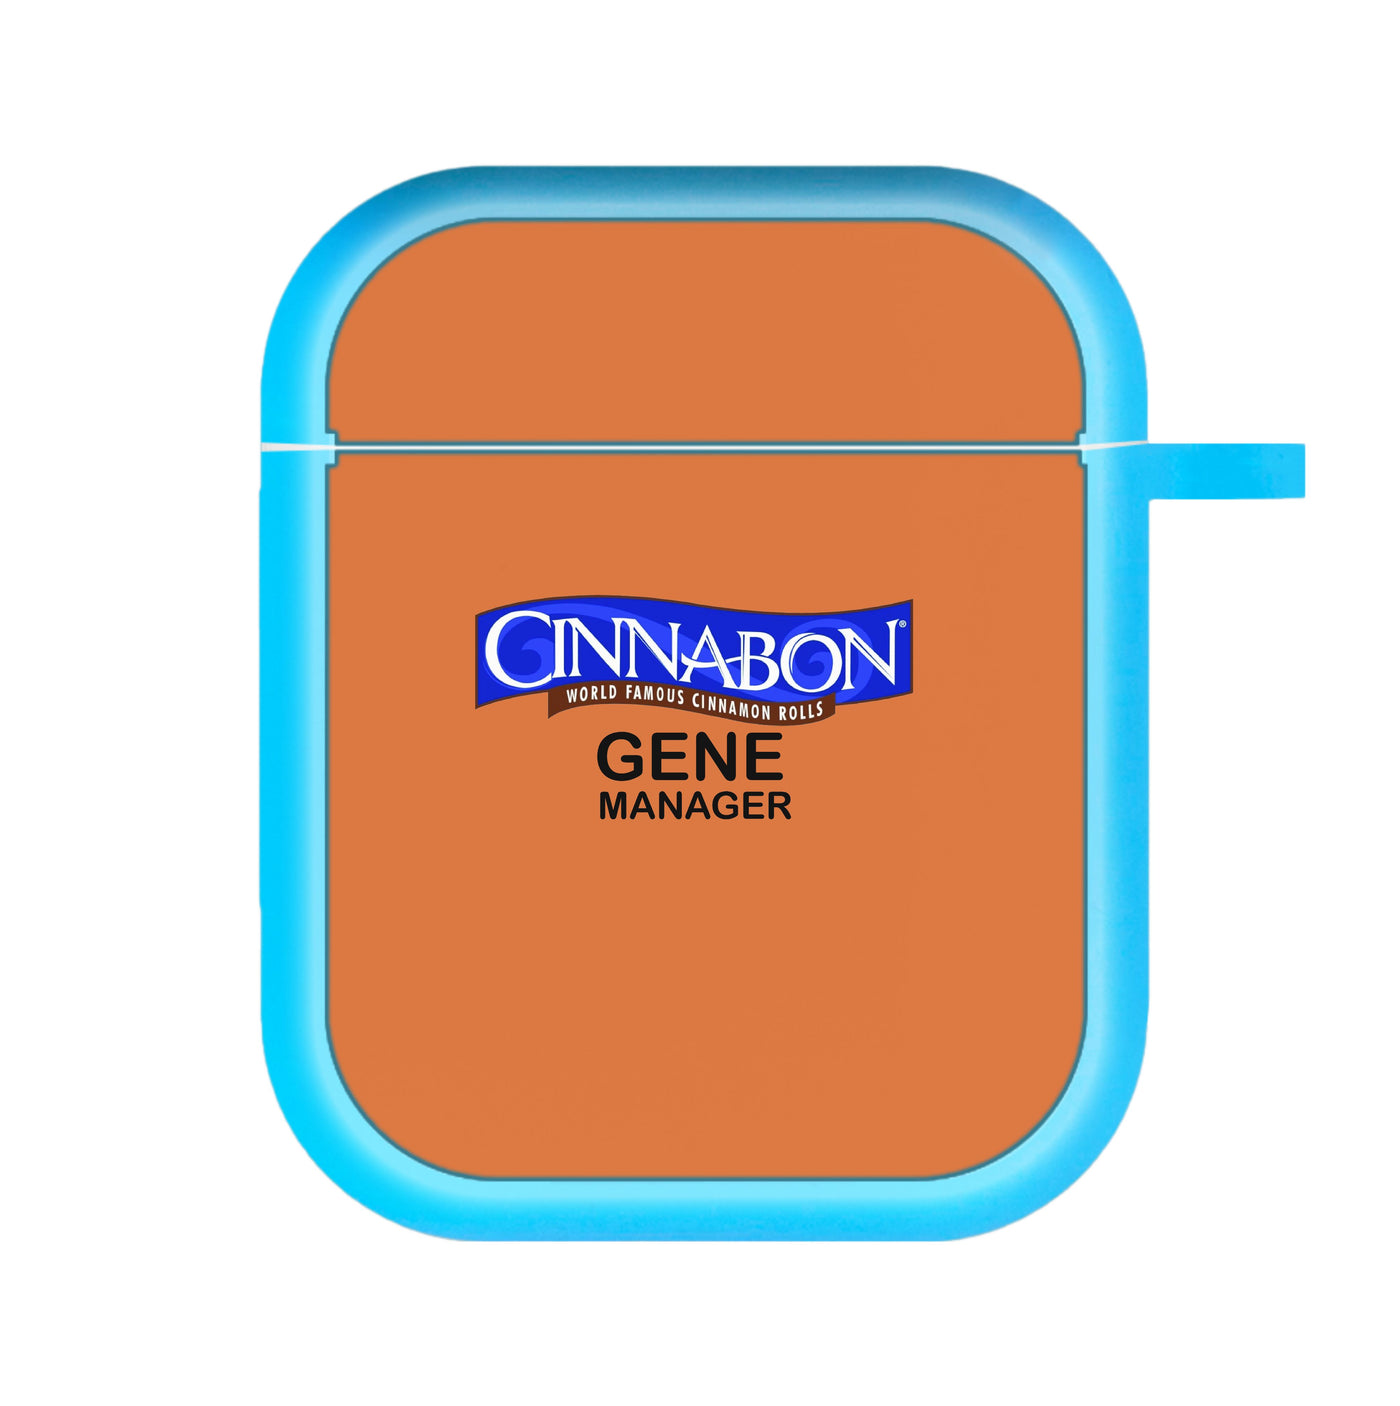 Cinnabon Gene Manager - Better Call Saul AirPods Case